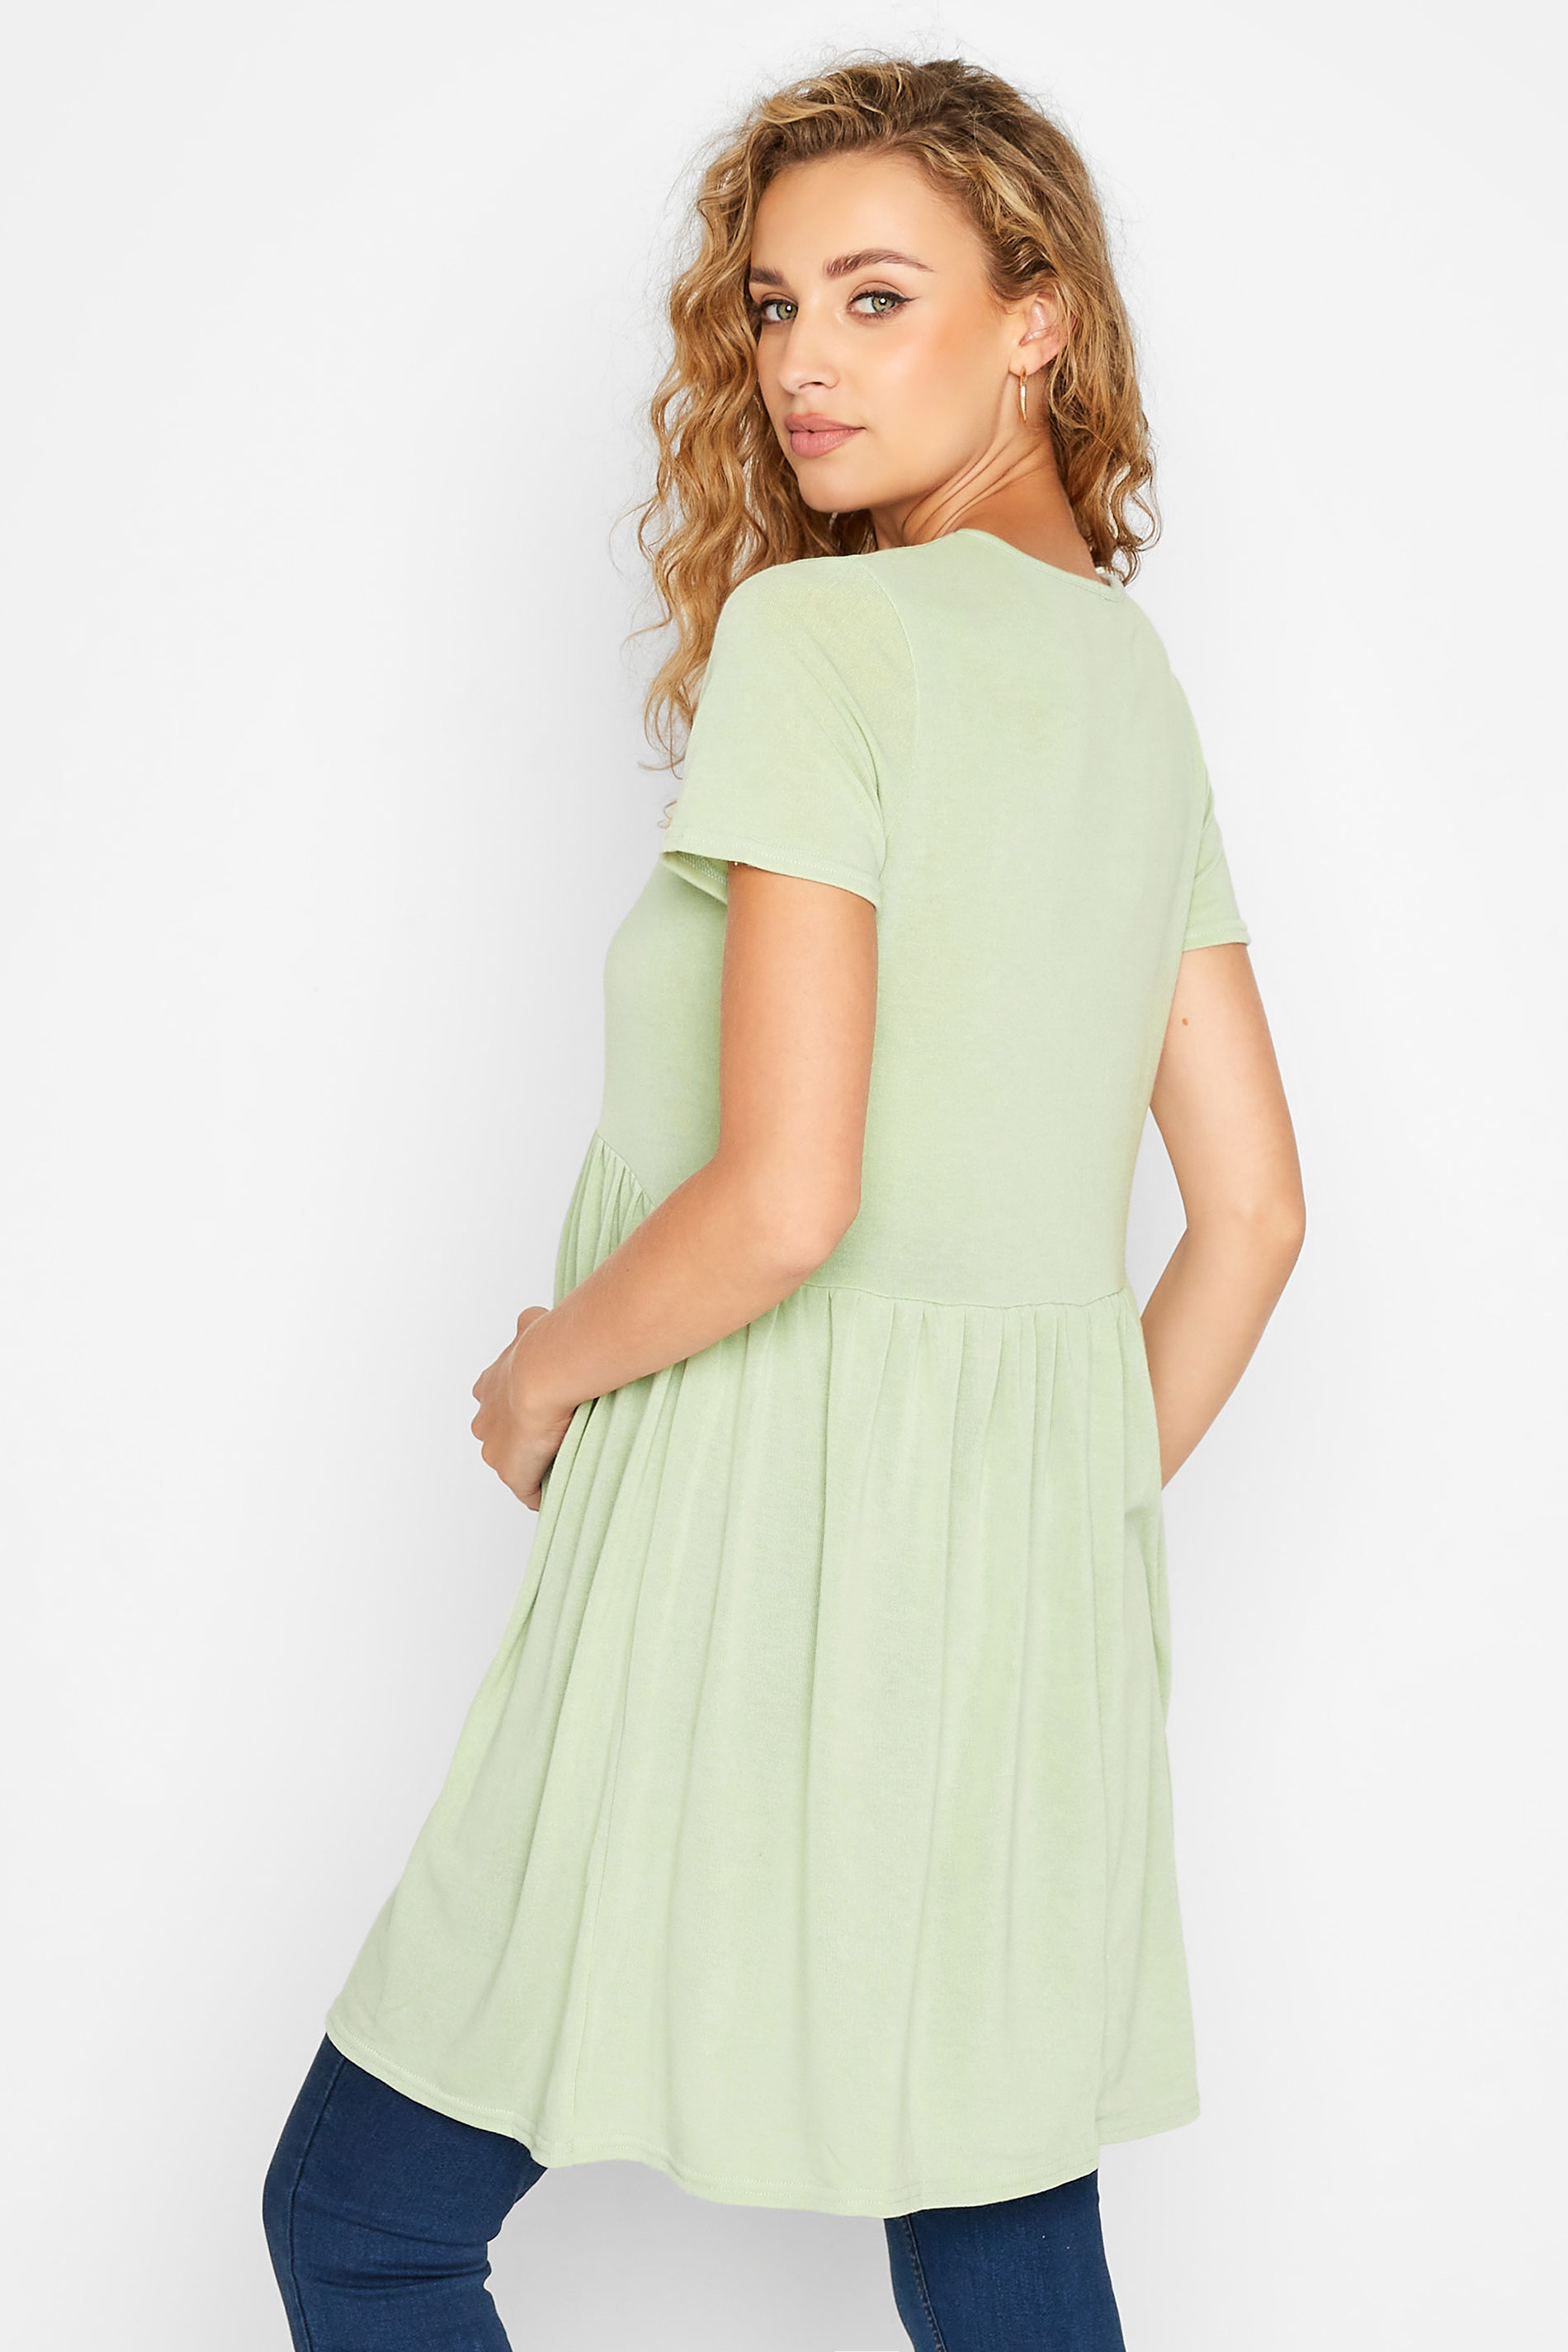 LTS Maternity Green Peplum Dress | Long Tall Sally  3